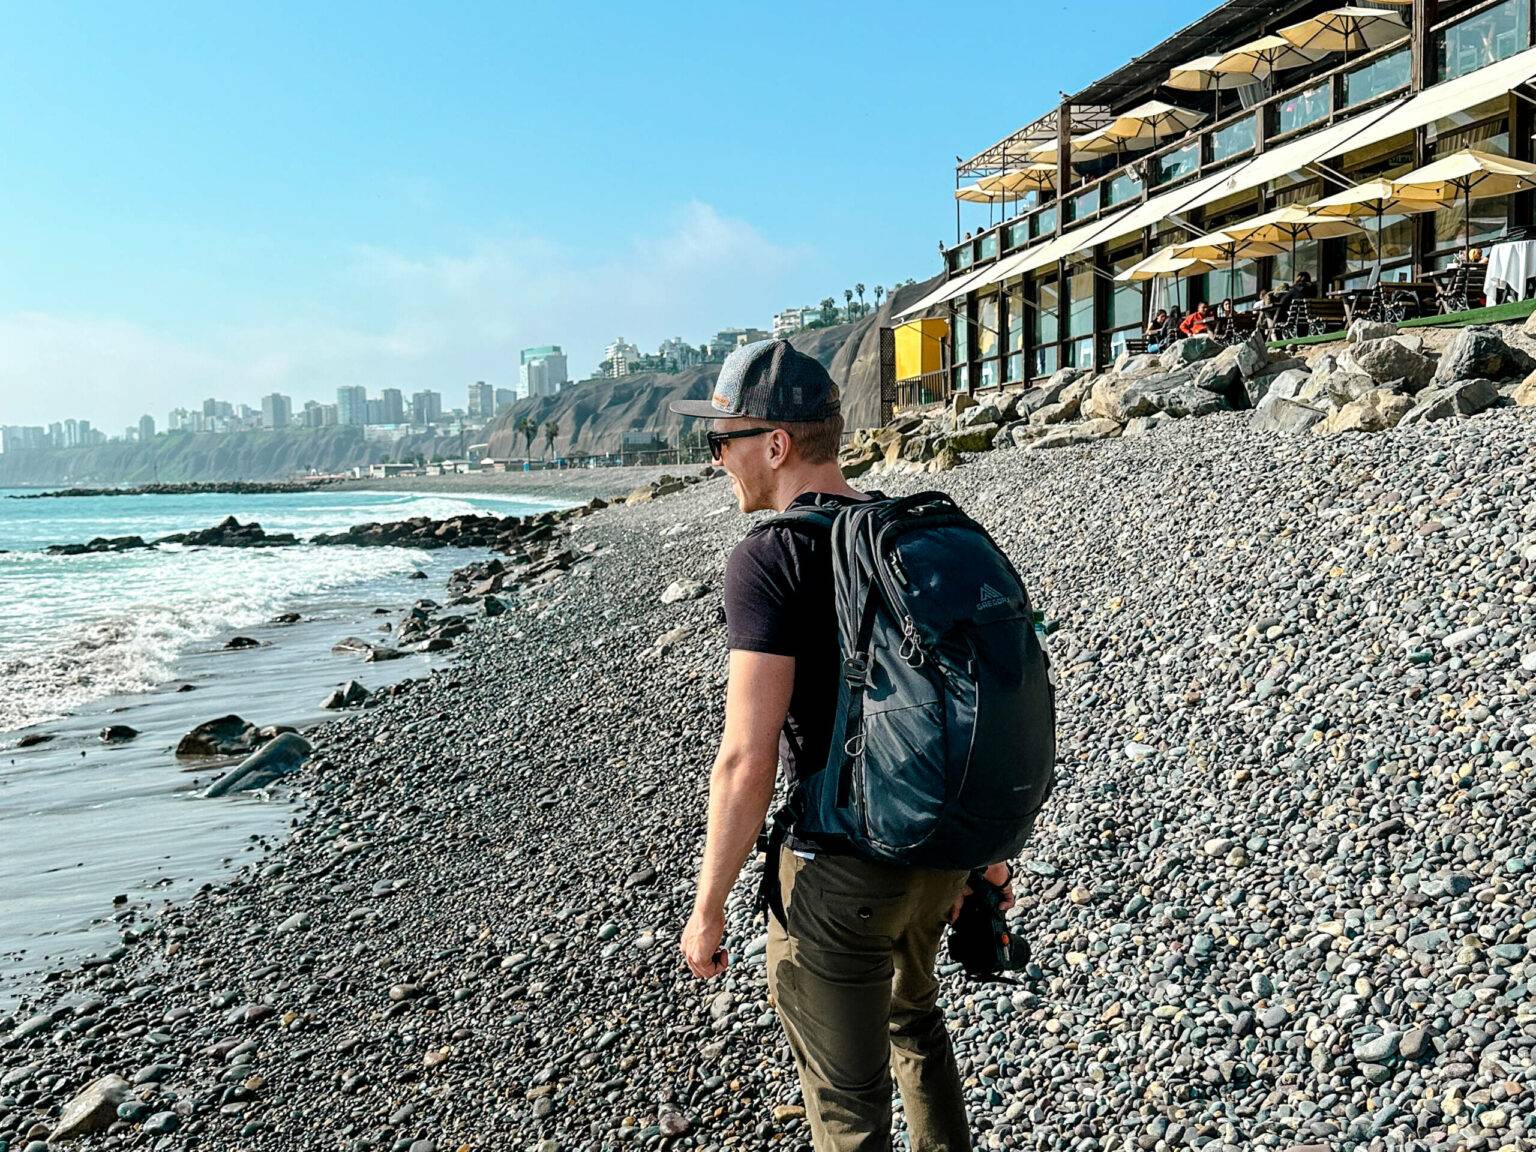 Reiseblogger Tom von traveloptimizer steht mit Rucksack an einem kieselsteinigen Strand in Lima.